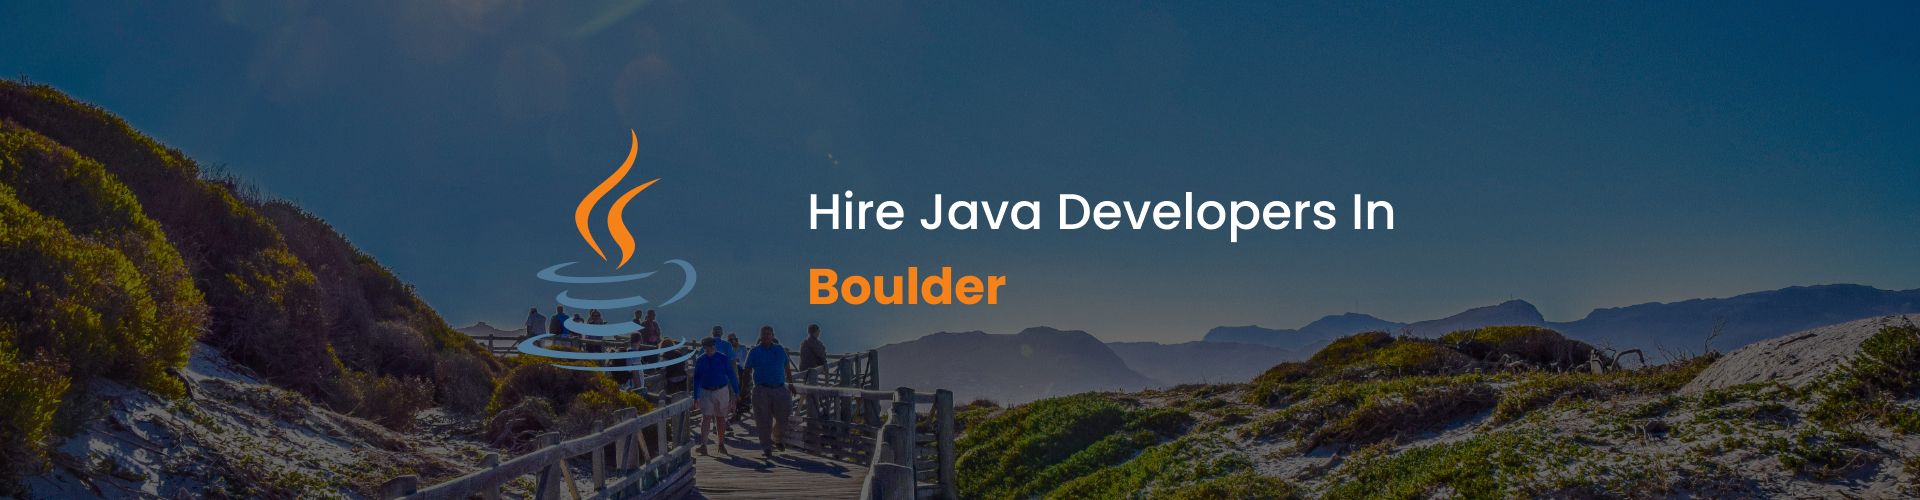 java developers boulder